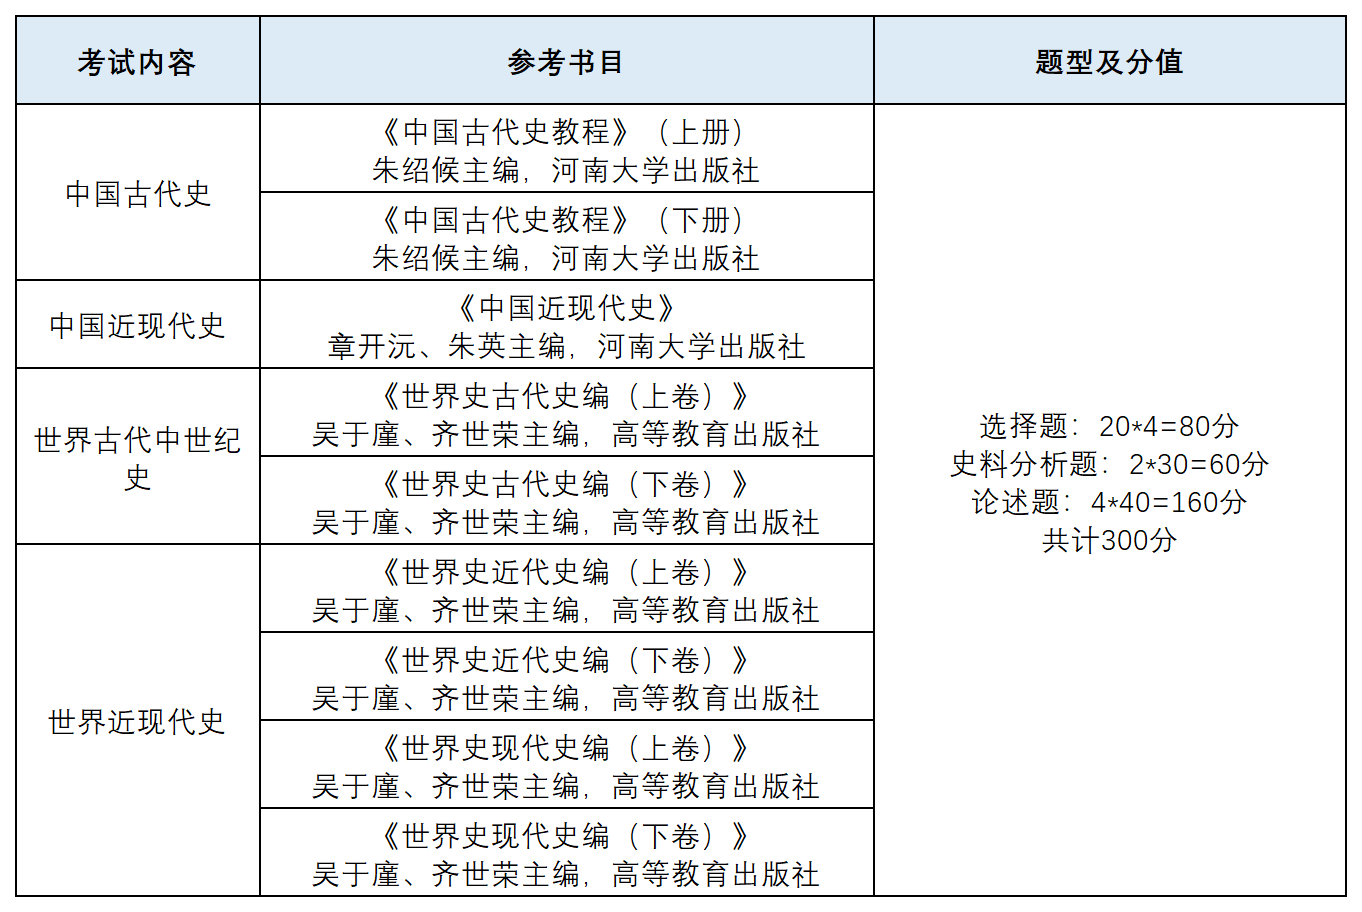 中国史（0602）、世界史（0603）考研考试科目、统考院校汇总